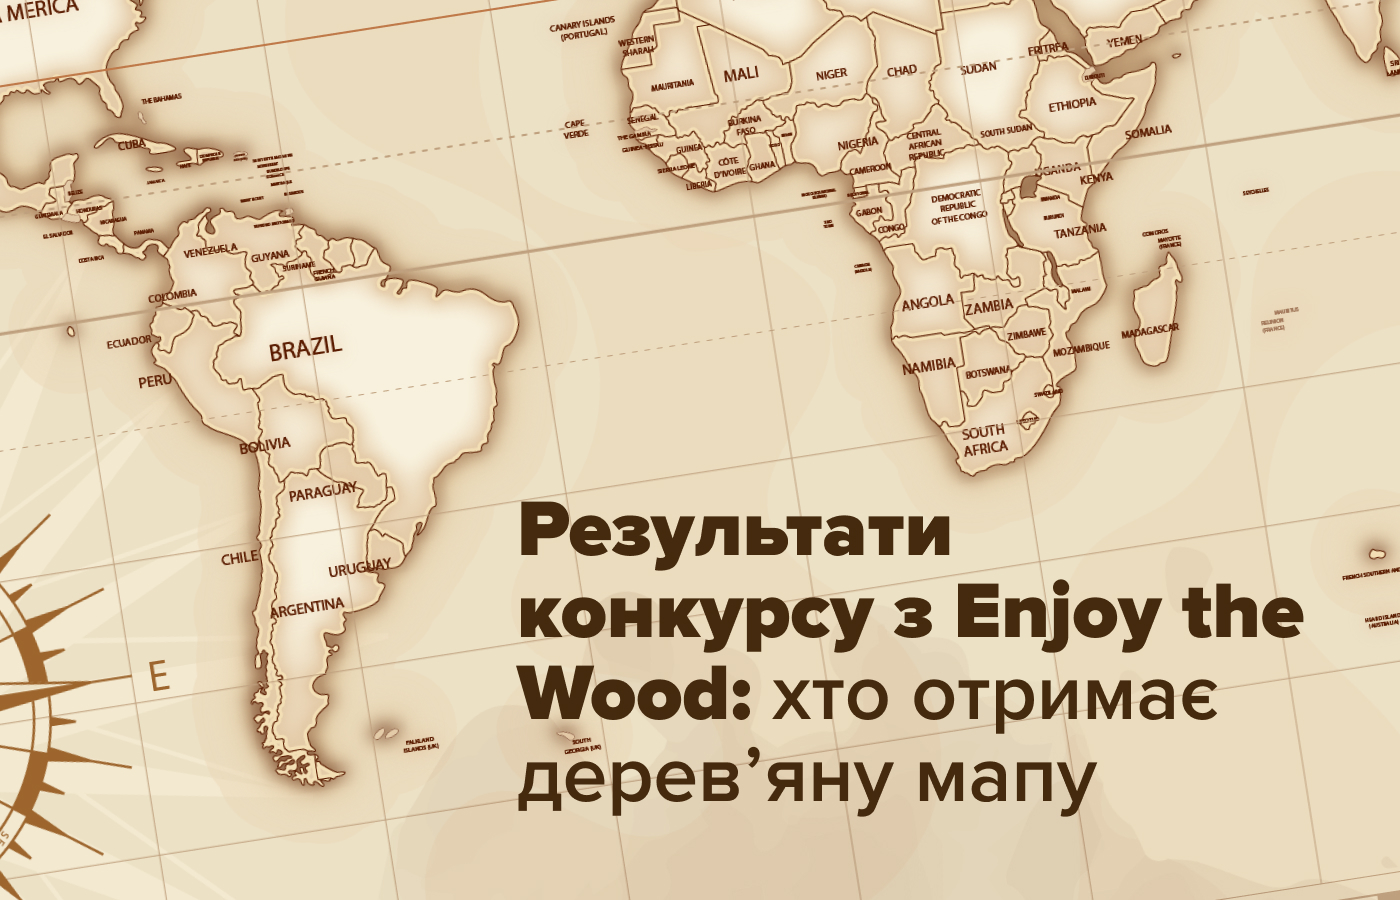 🗺 Rezuľtaty konkursu z Enjoy the Wood: hto otrymaje derev'janu mapu